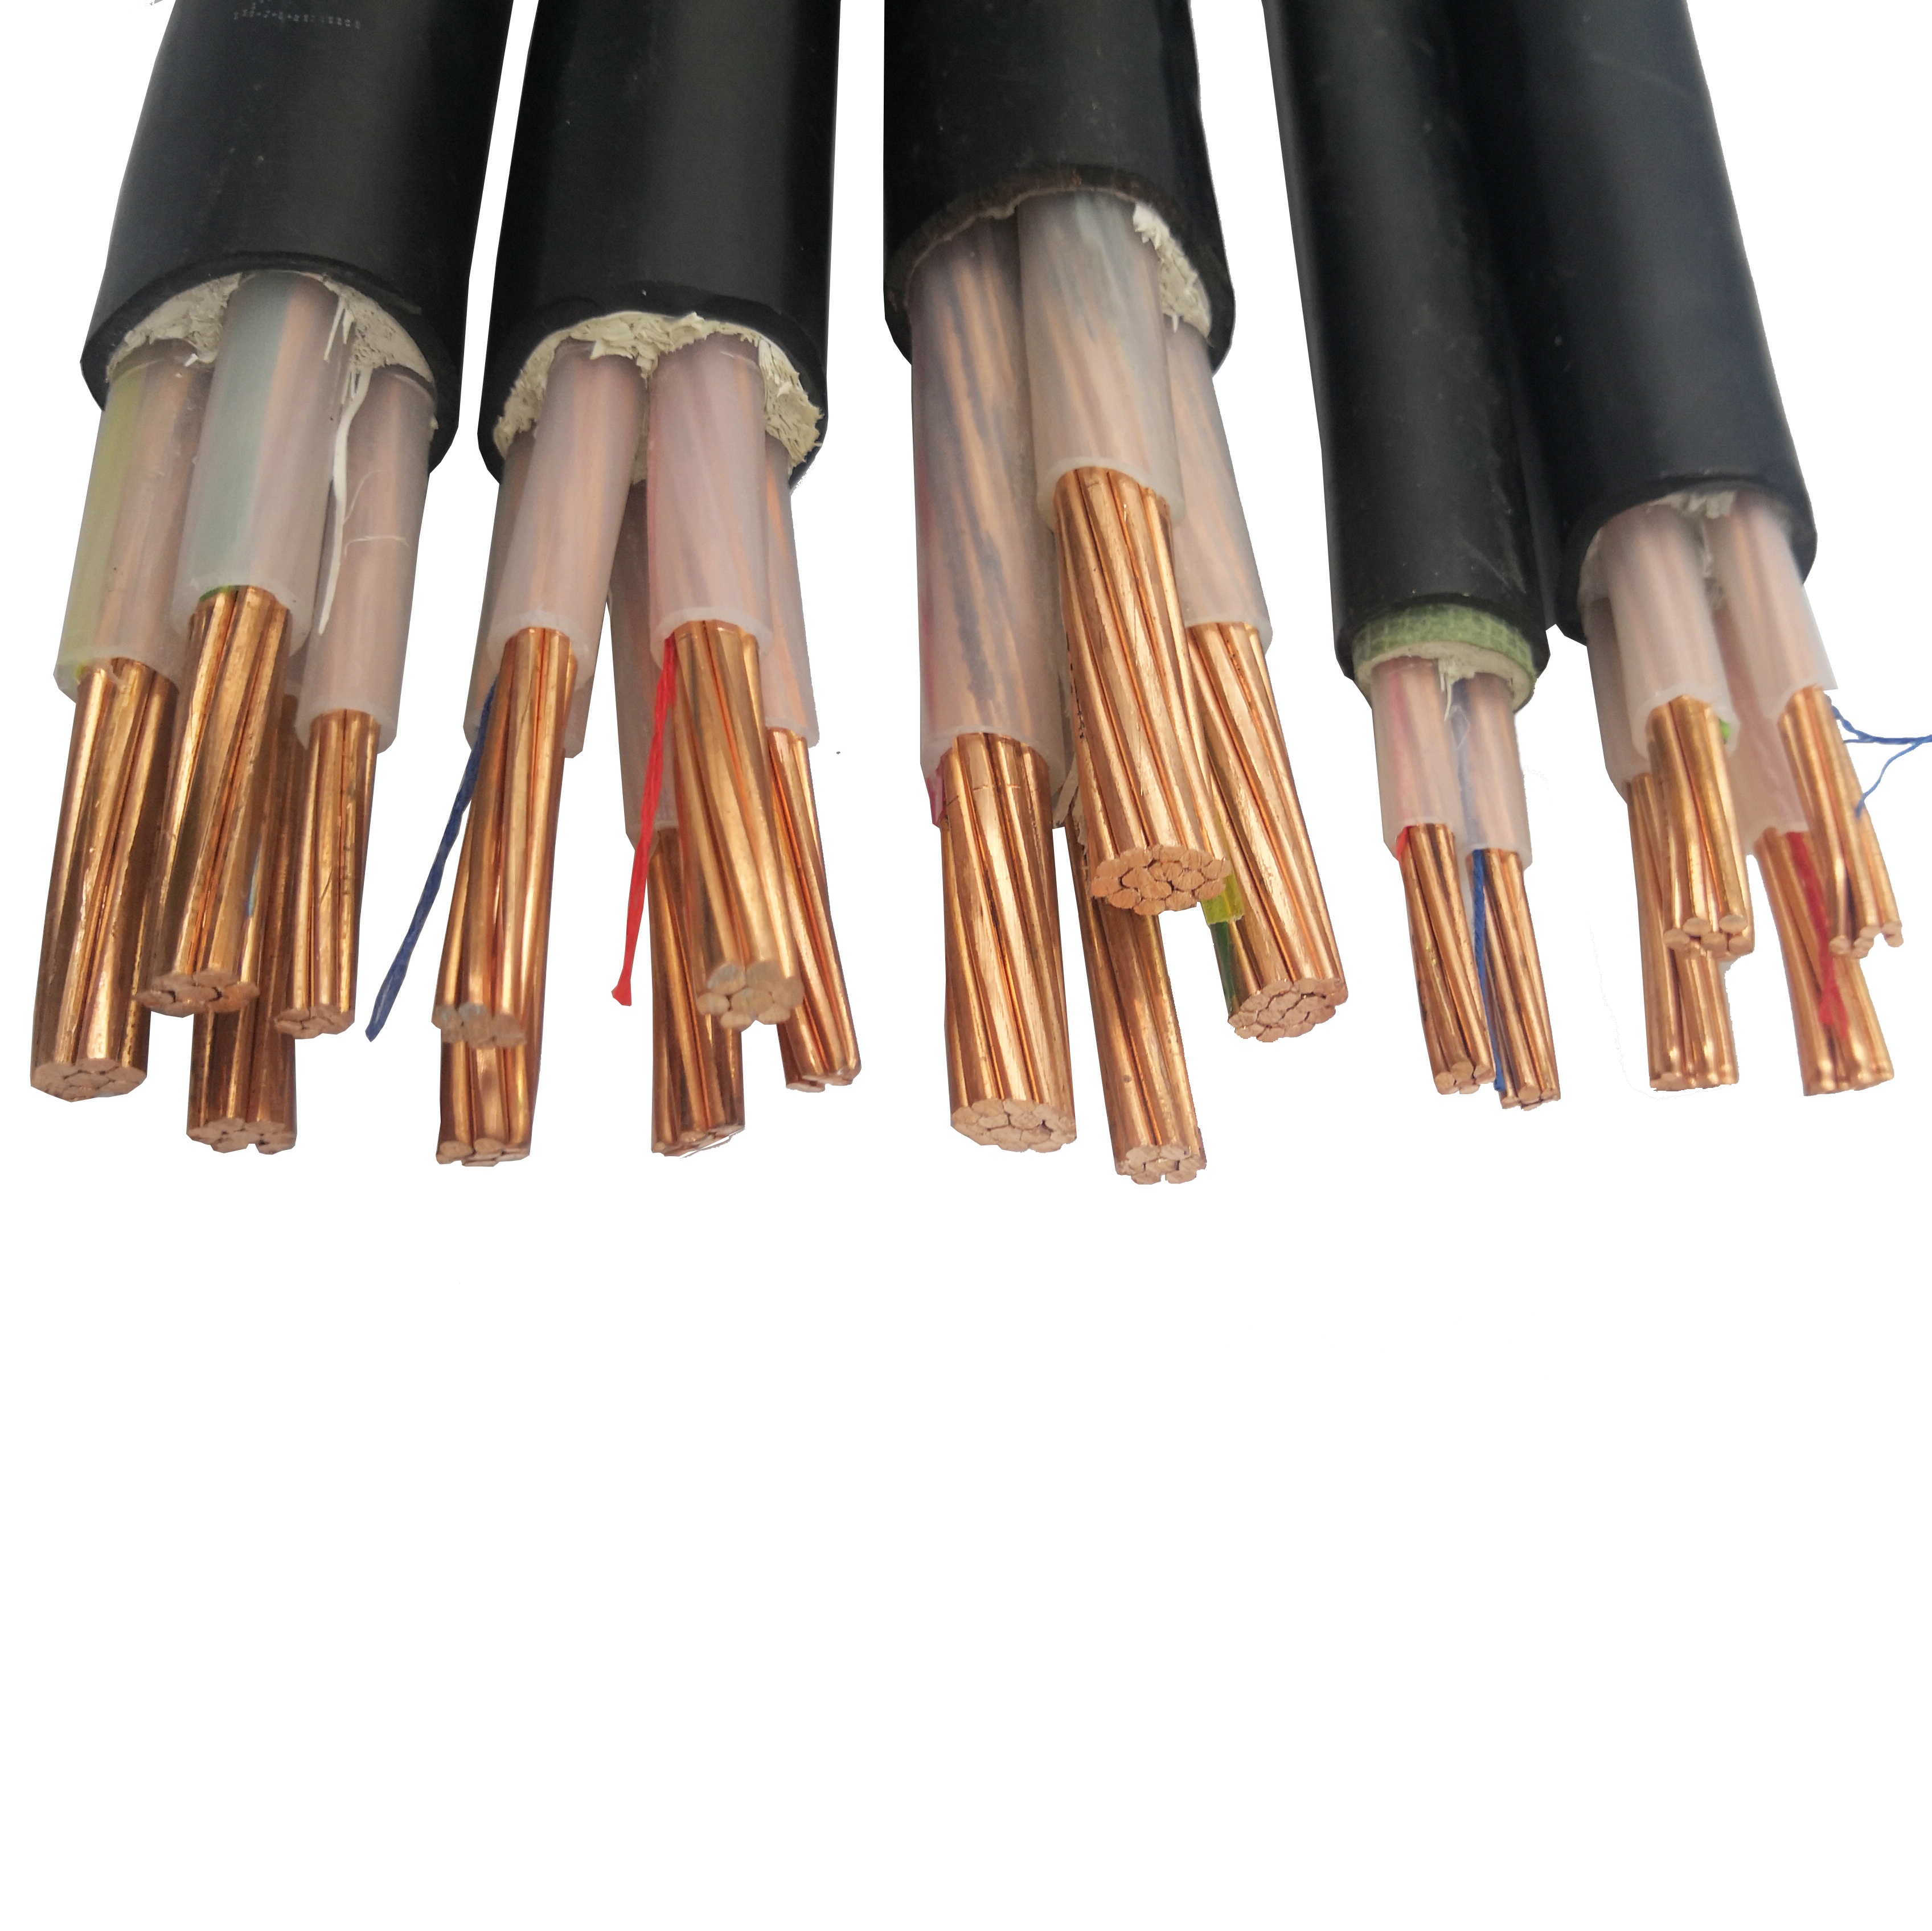 回收废旧电线电缆有哪些种类